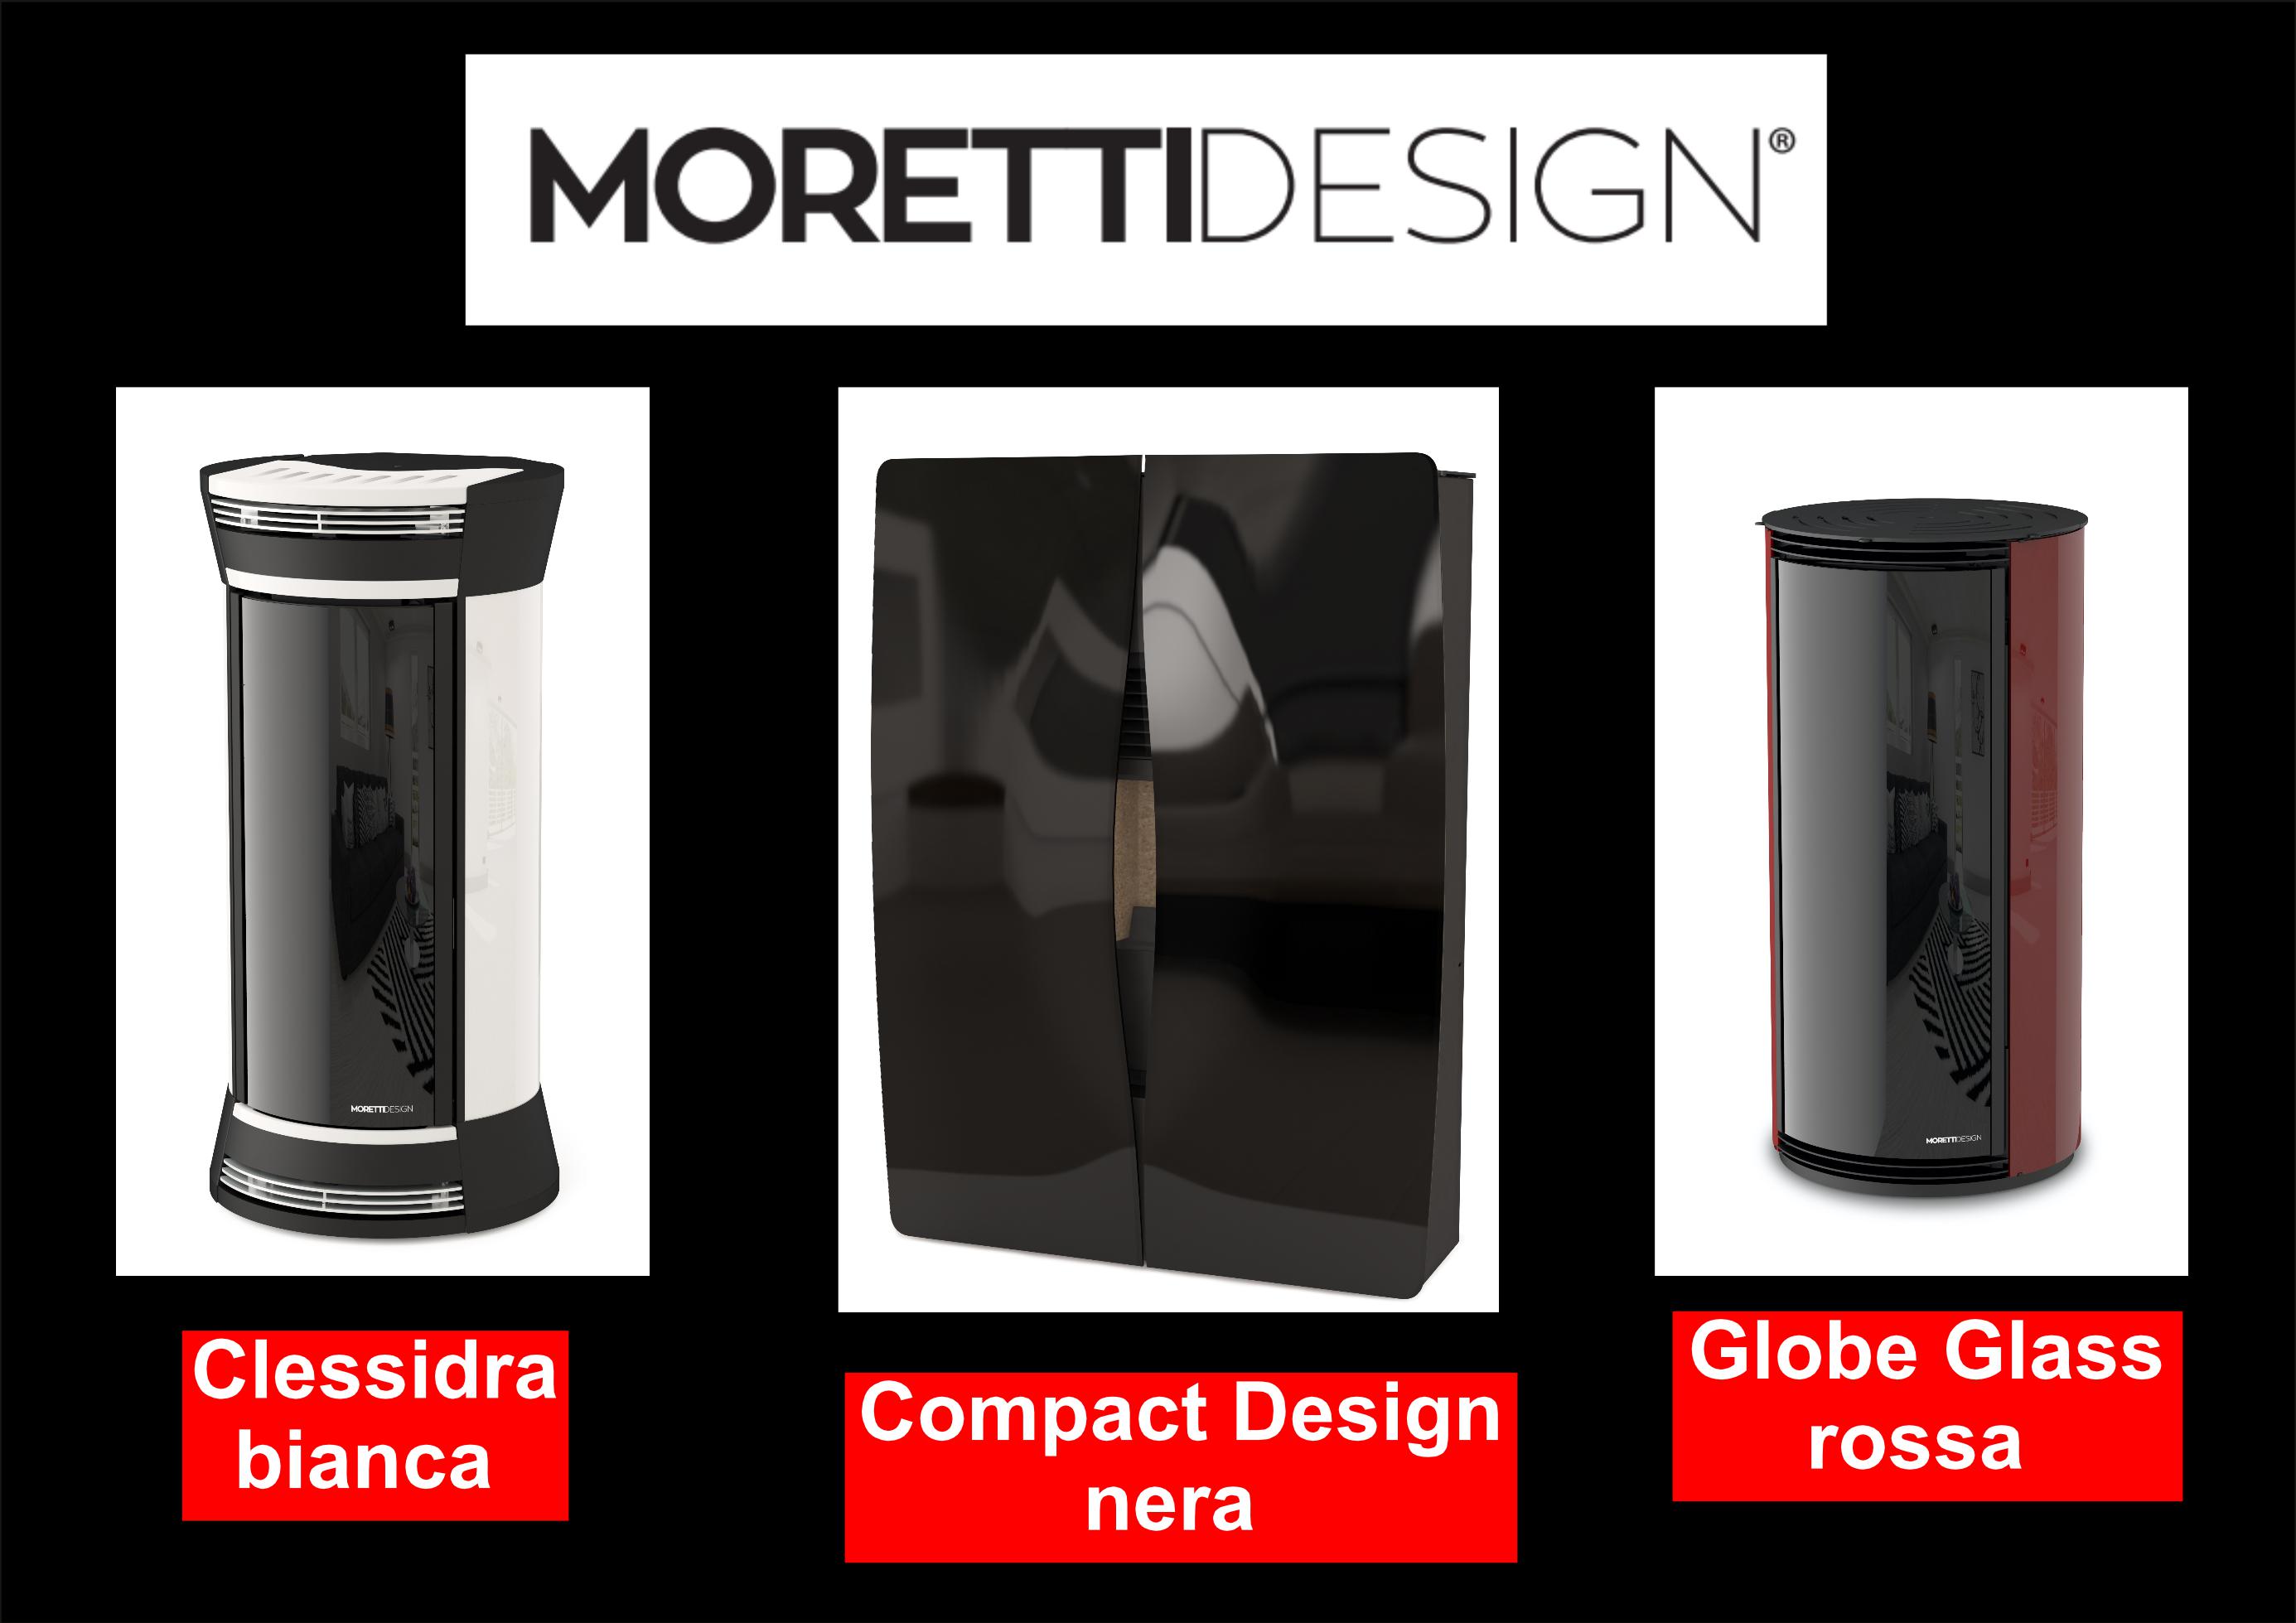 Pelletofen,Moretti,Moretti Design,modern, Moretti Deutschland